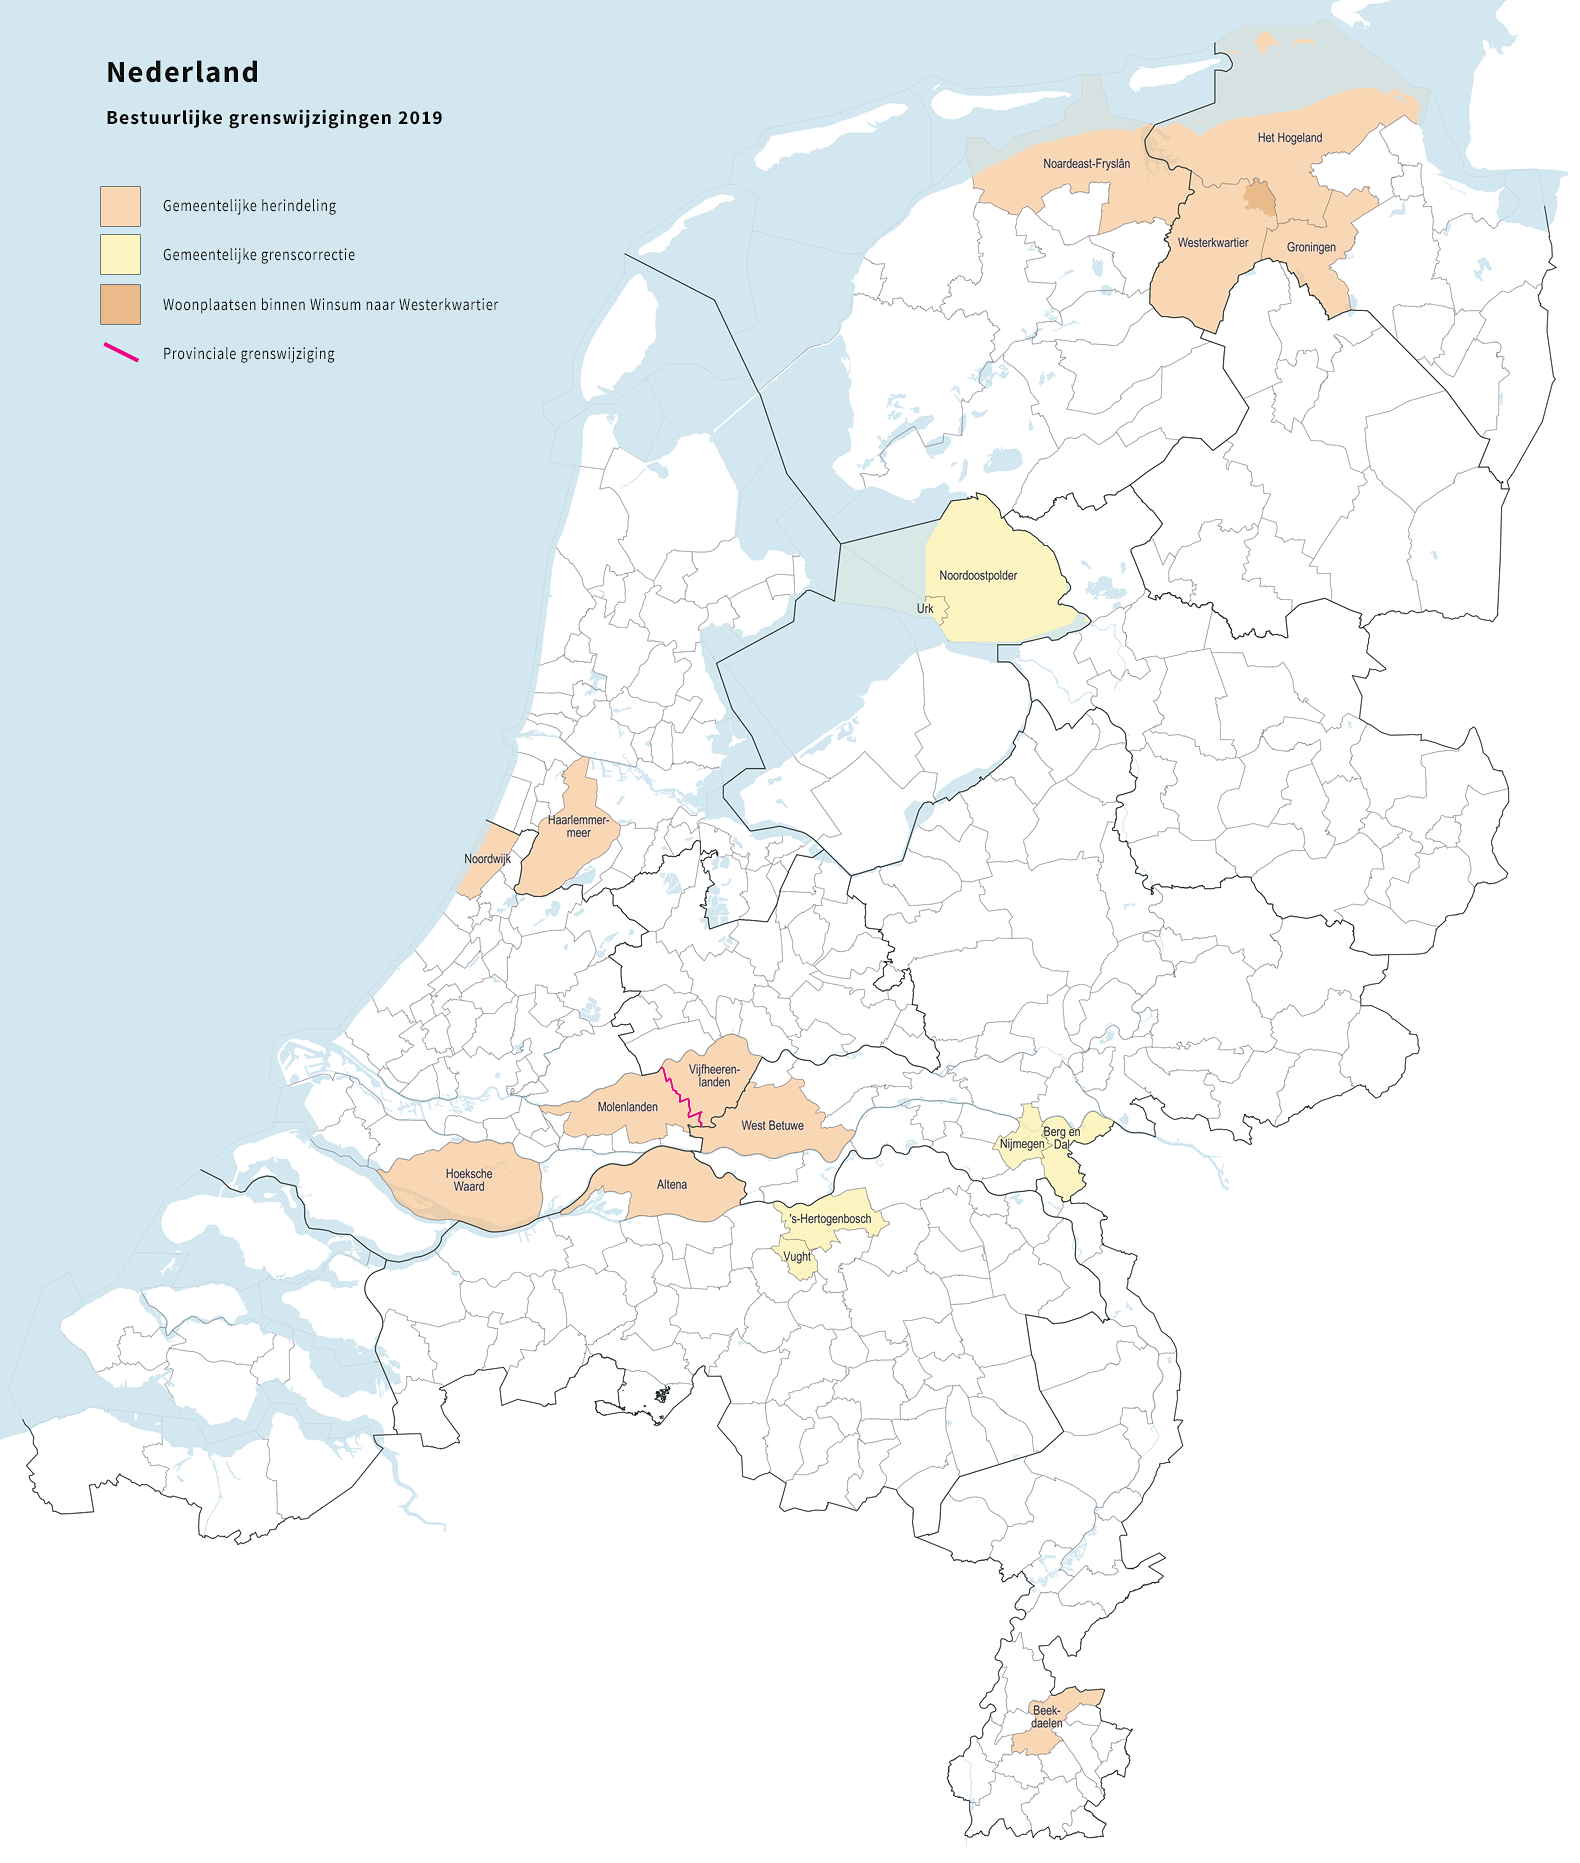 Alle gemeentelijke herindelingen per 1 januari 2019 op een kaart. In de lichtergekleurde gemeentes vindt een grenscorrectie plaats. Graphic: Jan-Willem van Aalst / Wikimedia Commons